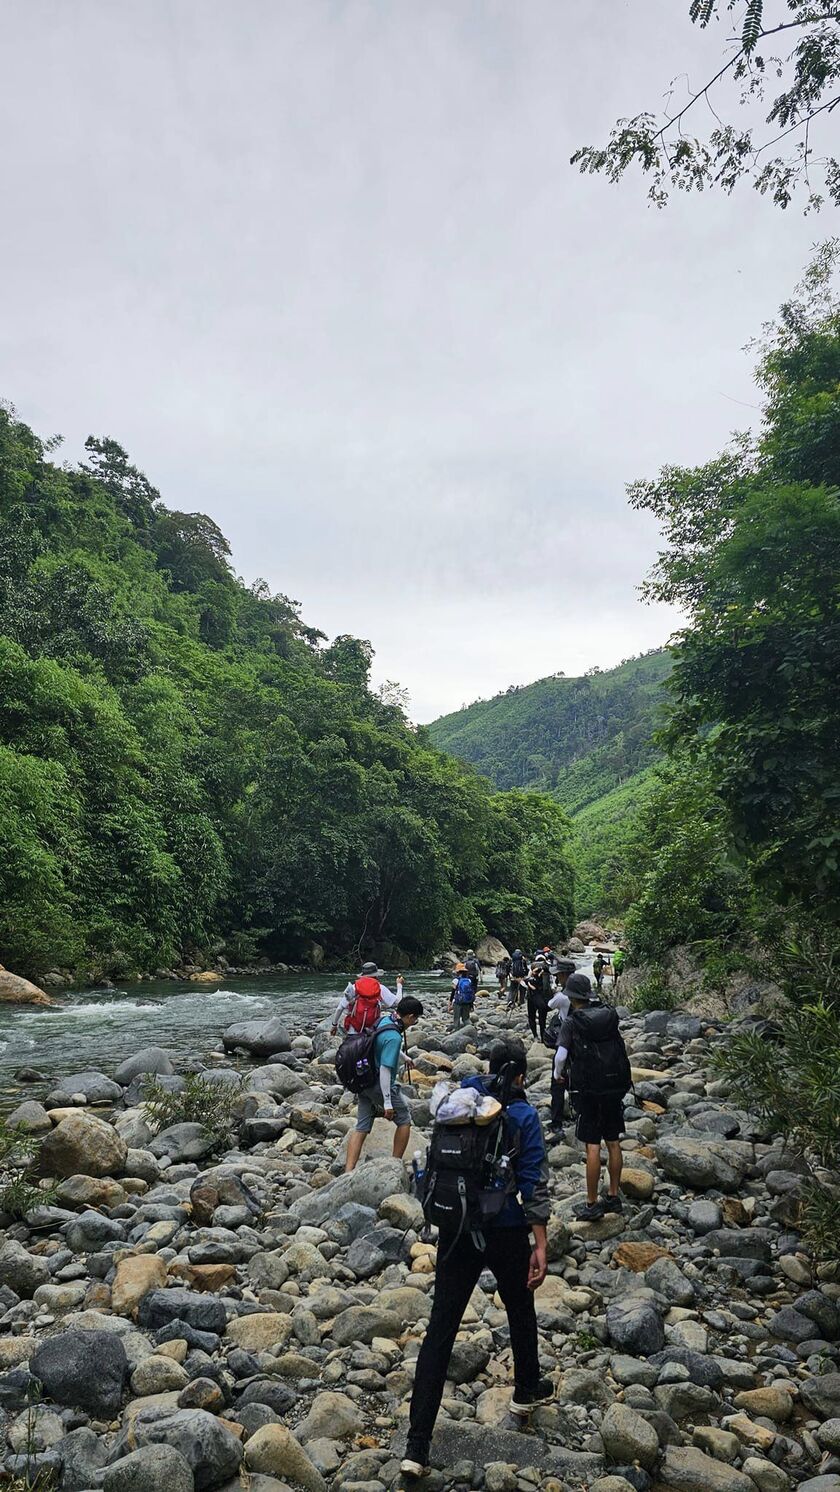 Băng qua những chặng đường rừng núi hiểm trở, lội qua nhiều dòng suối trong xanh, đoàn du lịch dừng chân tại khu vực cắm trại